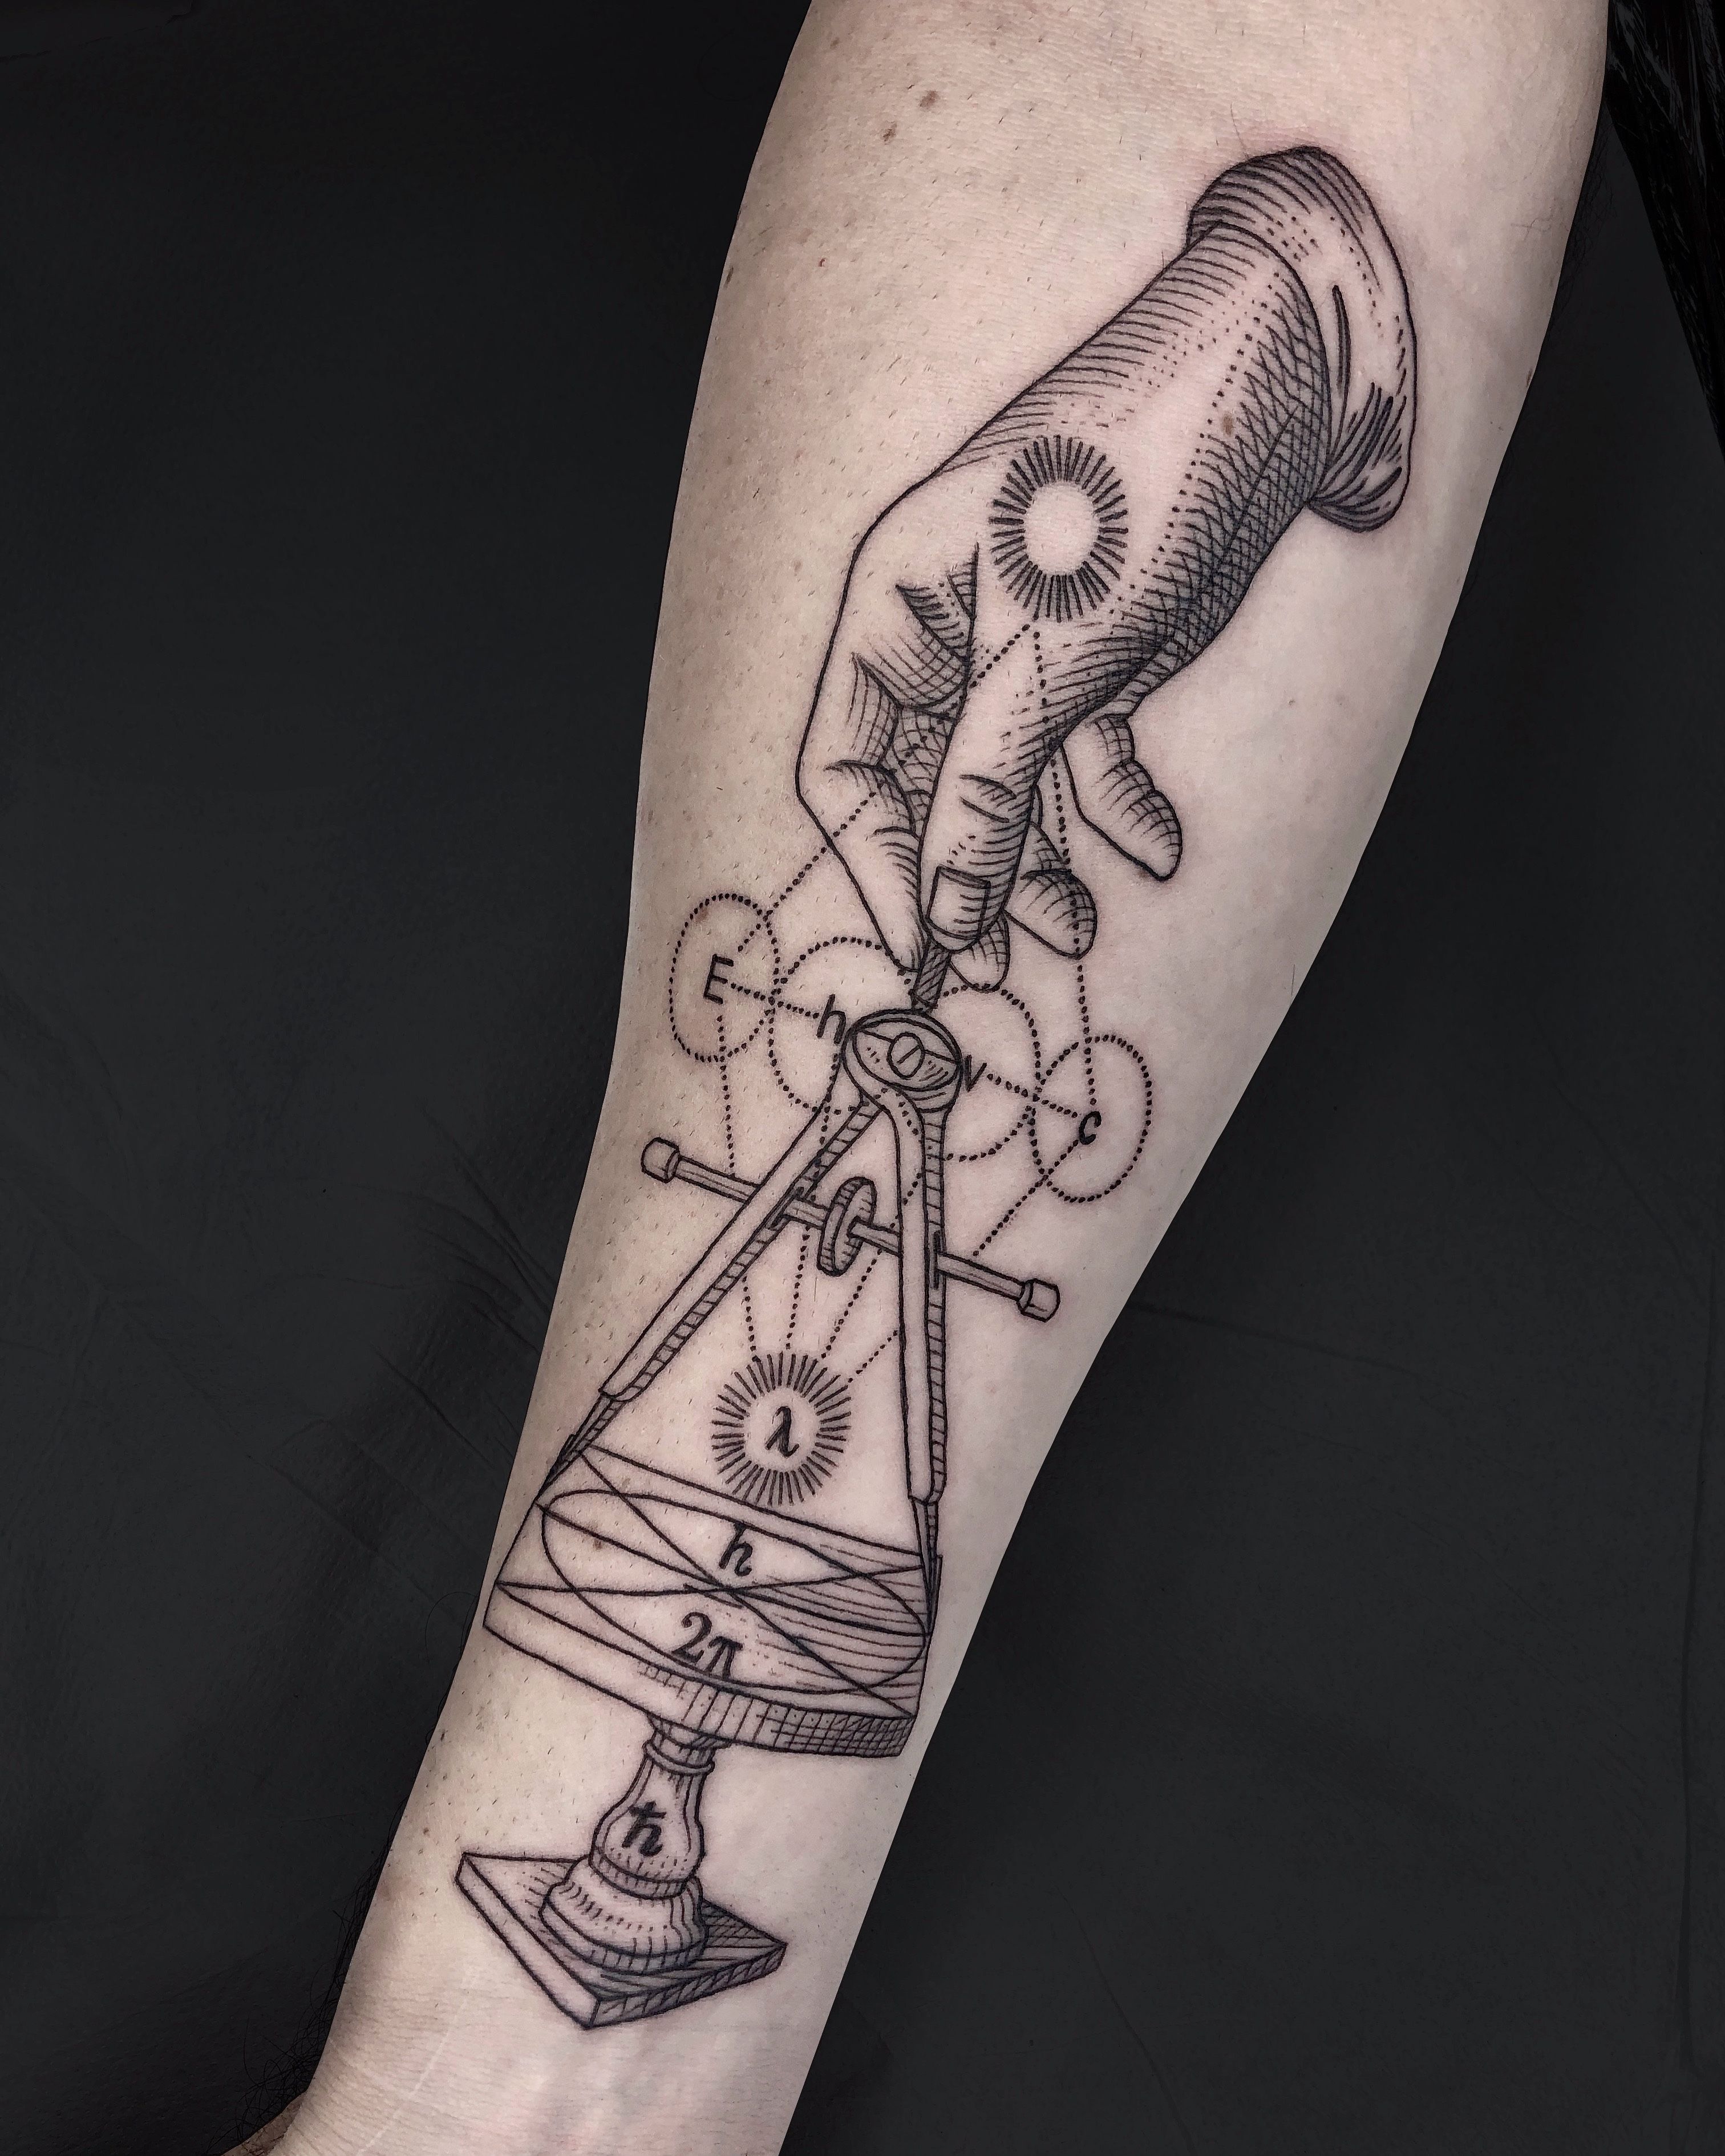 Minimalist compass tattoo on the wrist.